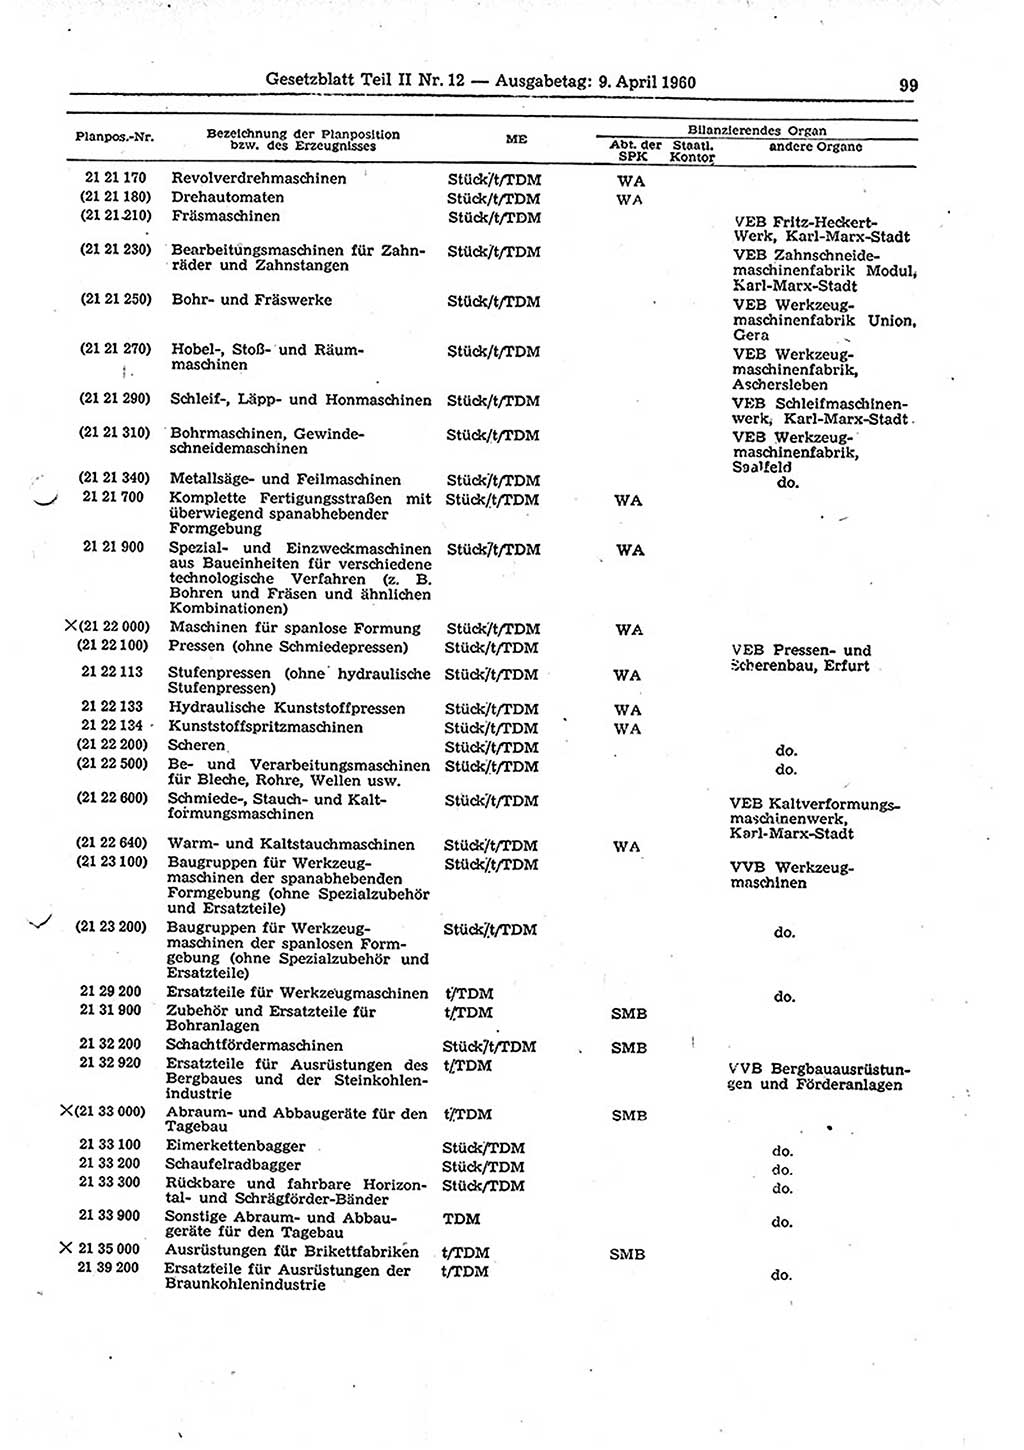 Gesetzblatt (GBl.) der Deutschen Demokratischen Republik (DDR) Teil ⅠⅠ 1960, Seite 99 (GBl. DDR ⅠⅠ 1960, S. 99)